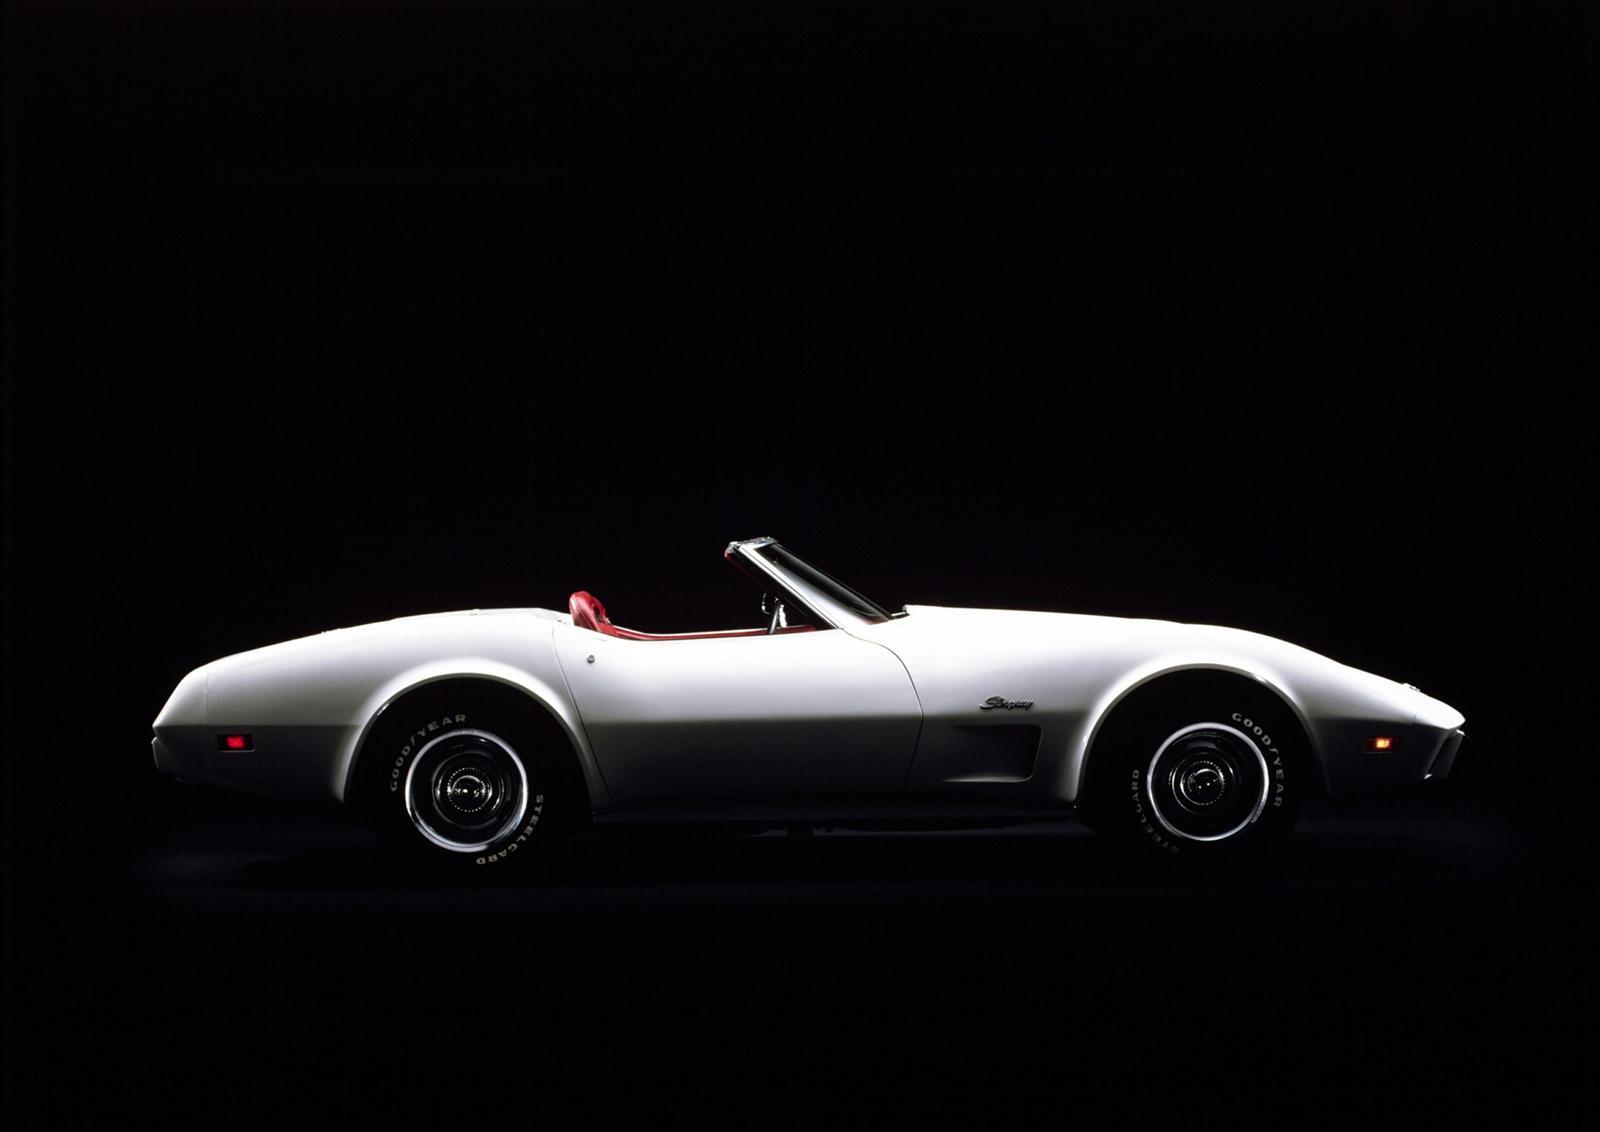 1974 a fost ultimul an pentru V8-ul big-block, iar 1975 a fost ultimul an pentru cabrioletul Corvette C3